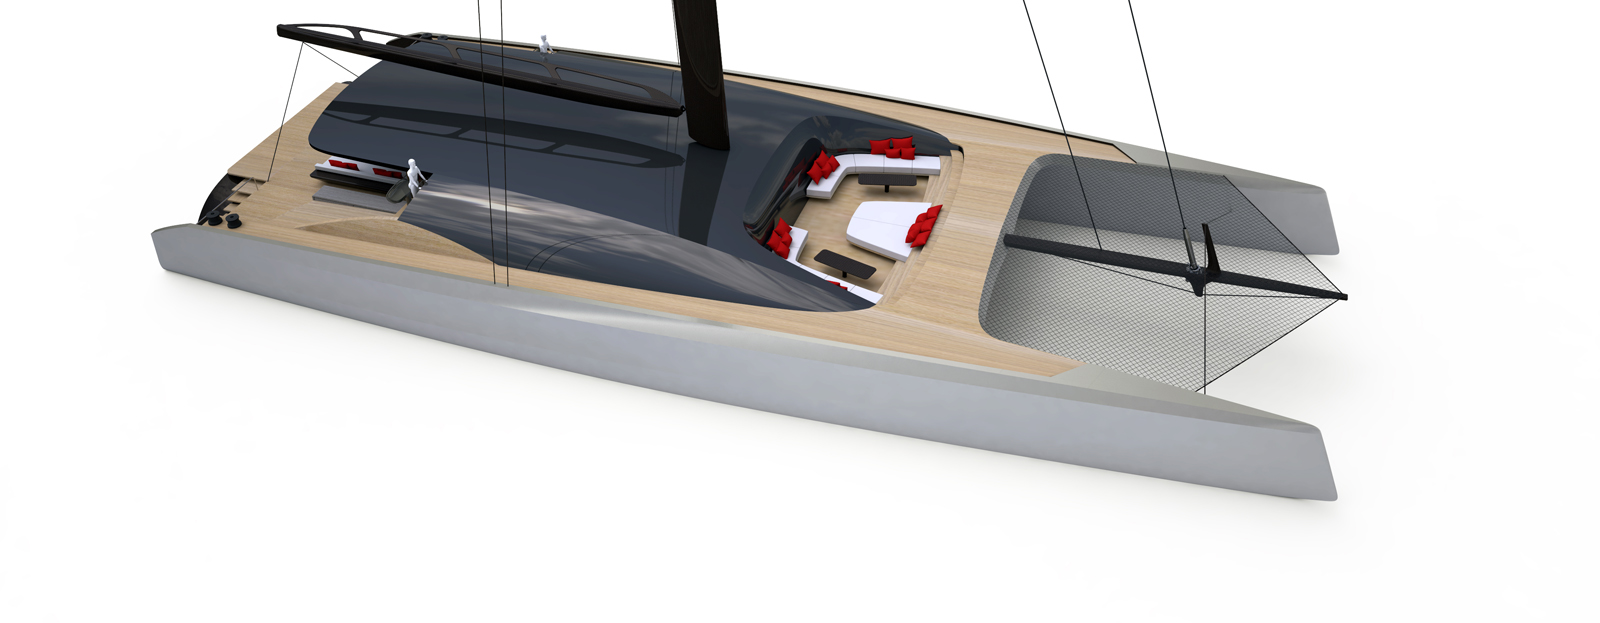 BlackCat 35 | Catamaran Racing, News & Design